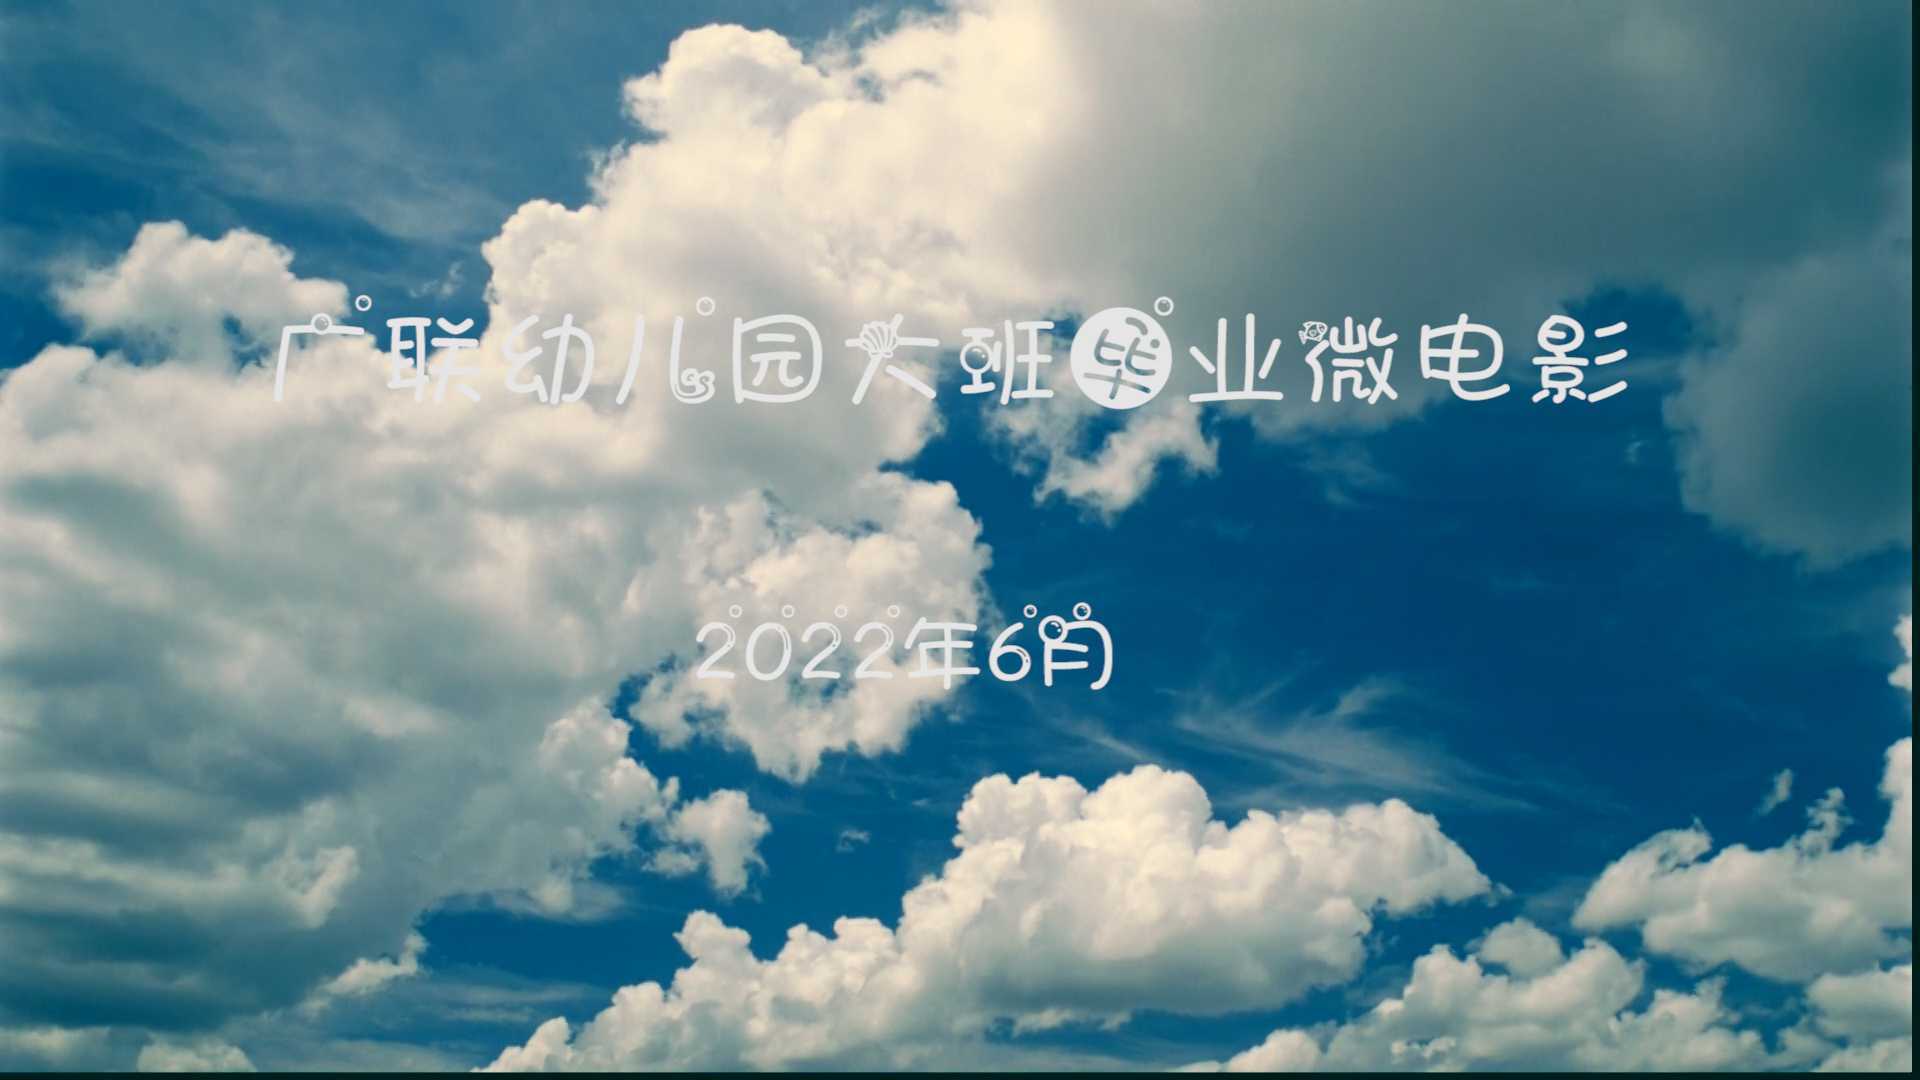 2022.6.9广联幼儿园毕业微电影